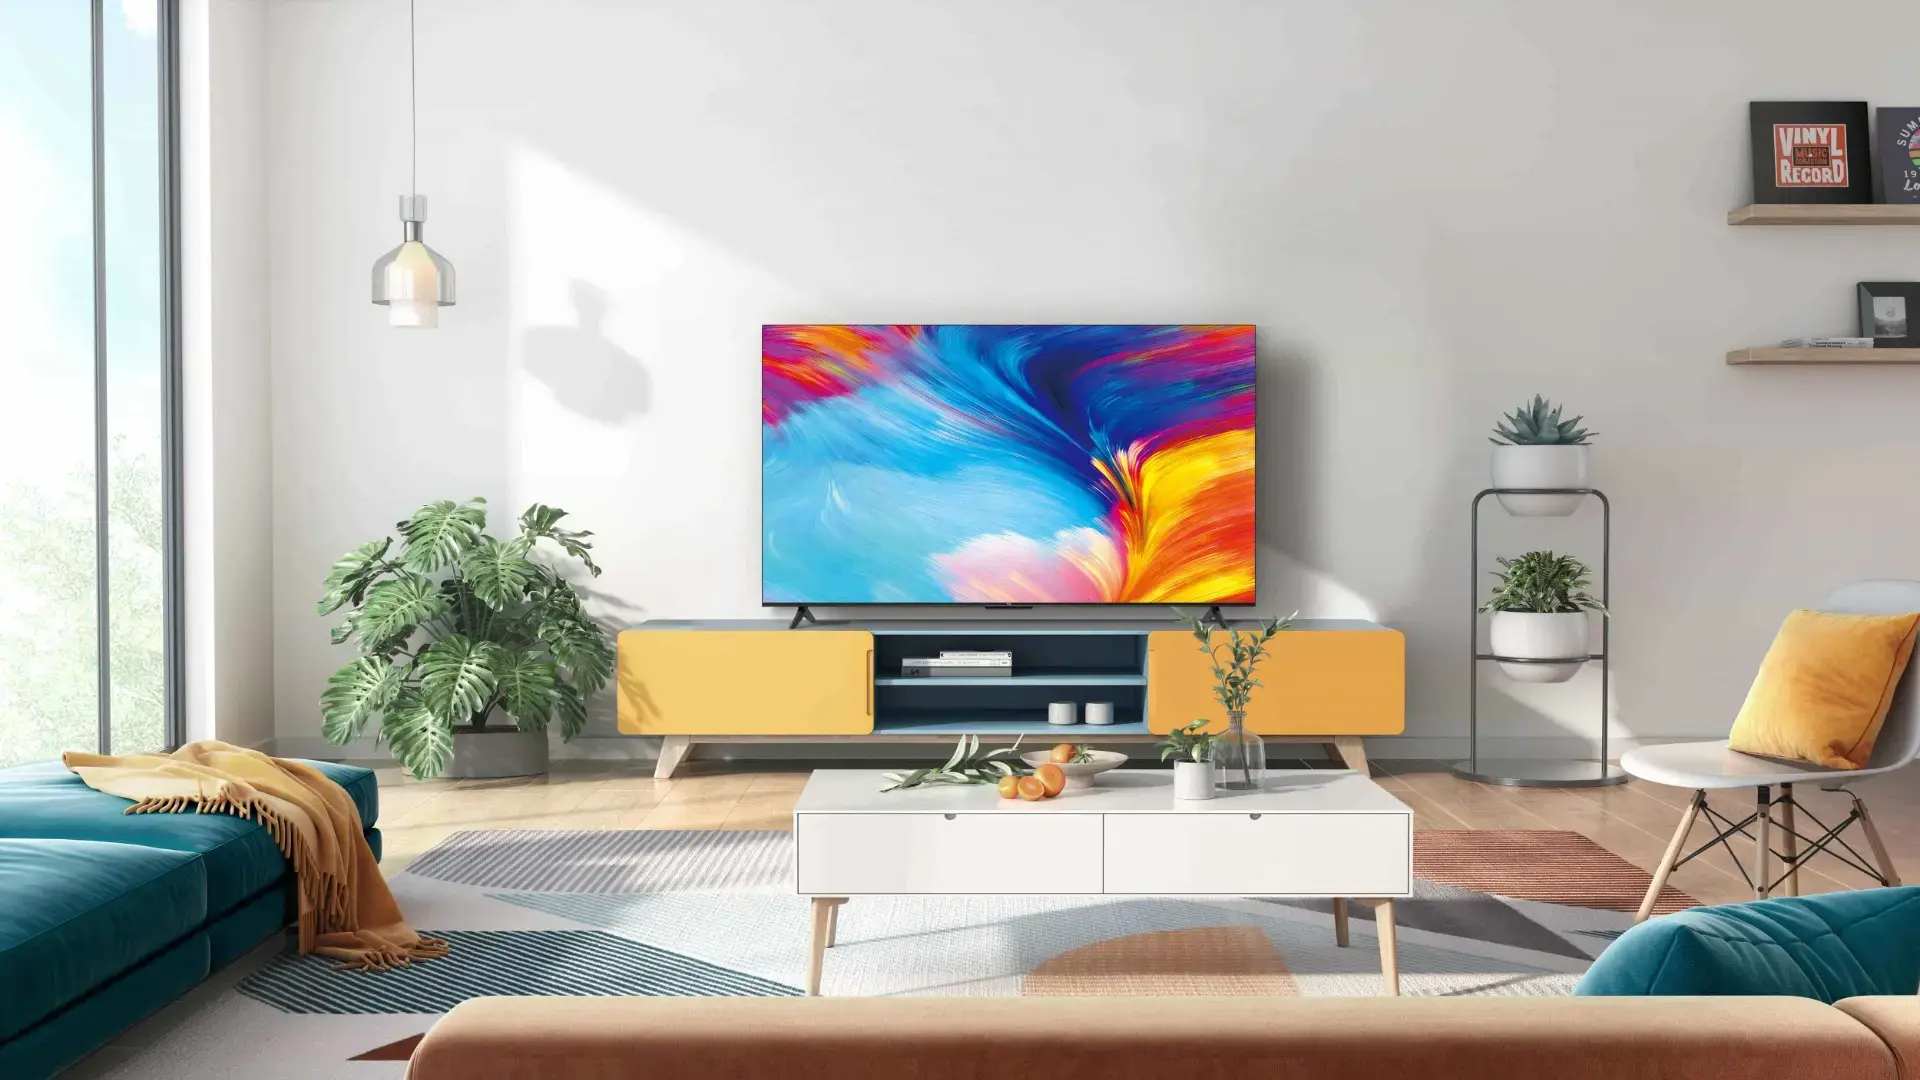 Televizor TCL LED 58P635, 146 cm, Smart Google TV, 4K Ultra HD, Clasa E, Negru